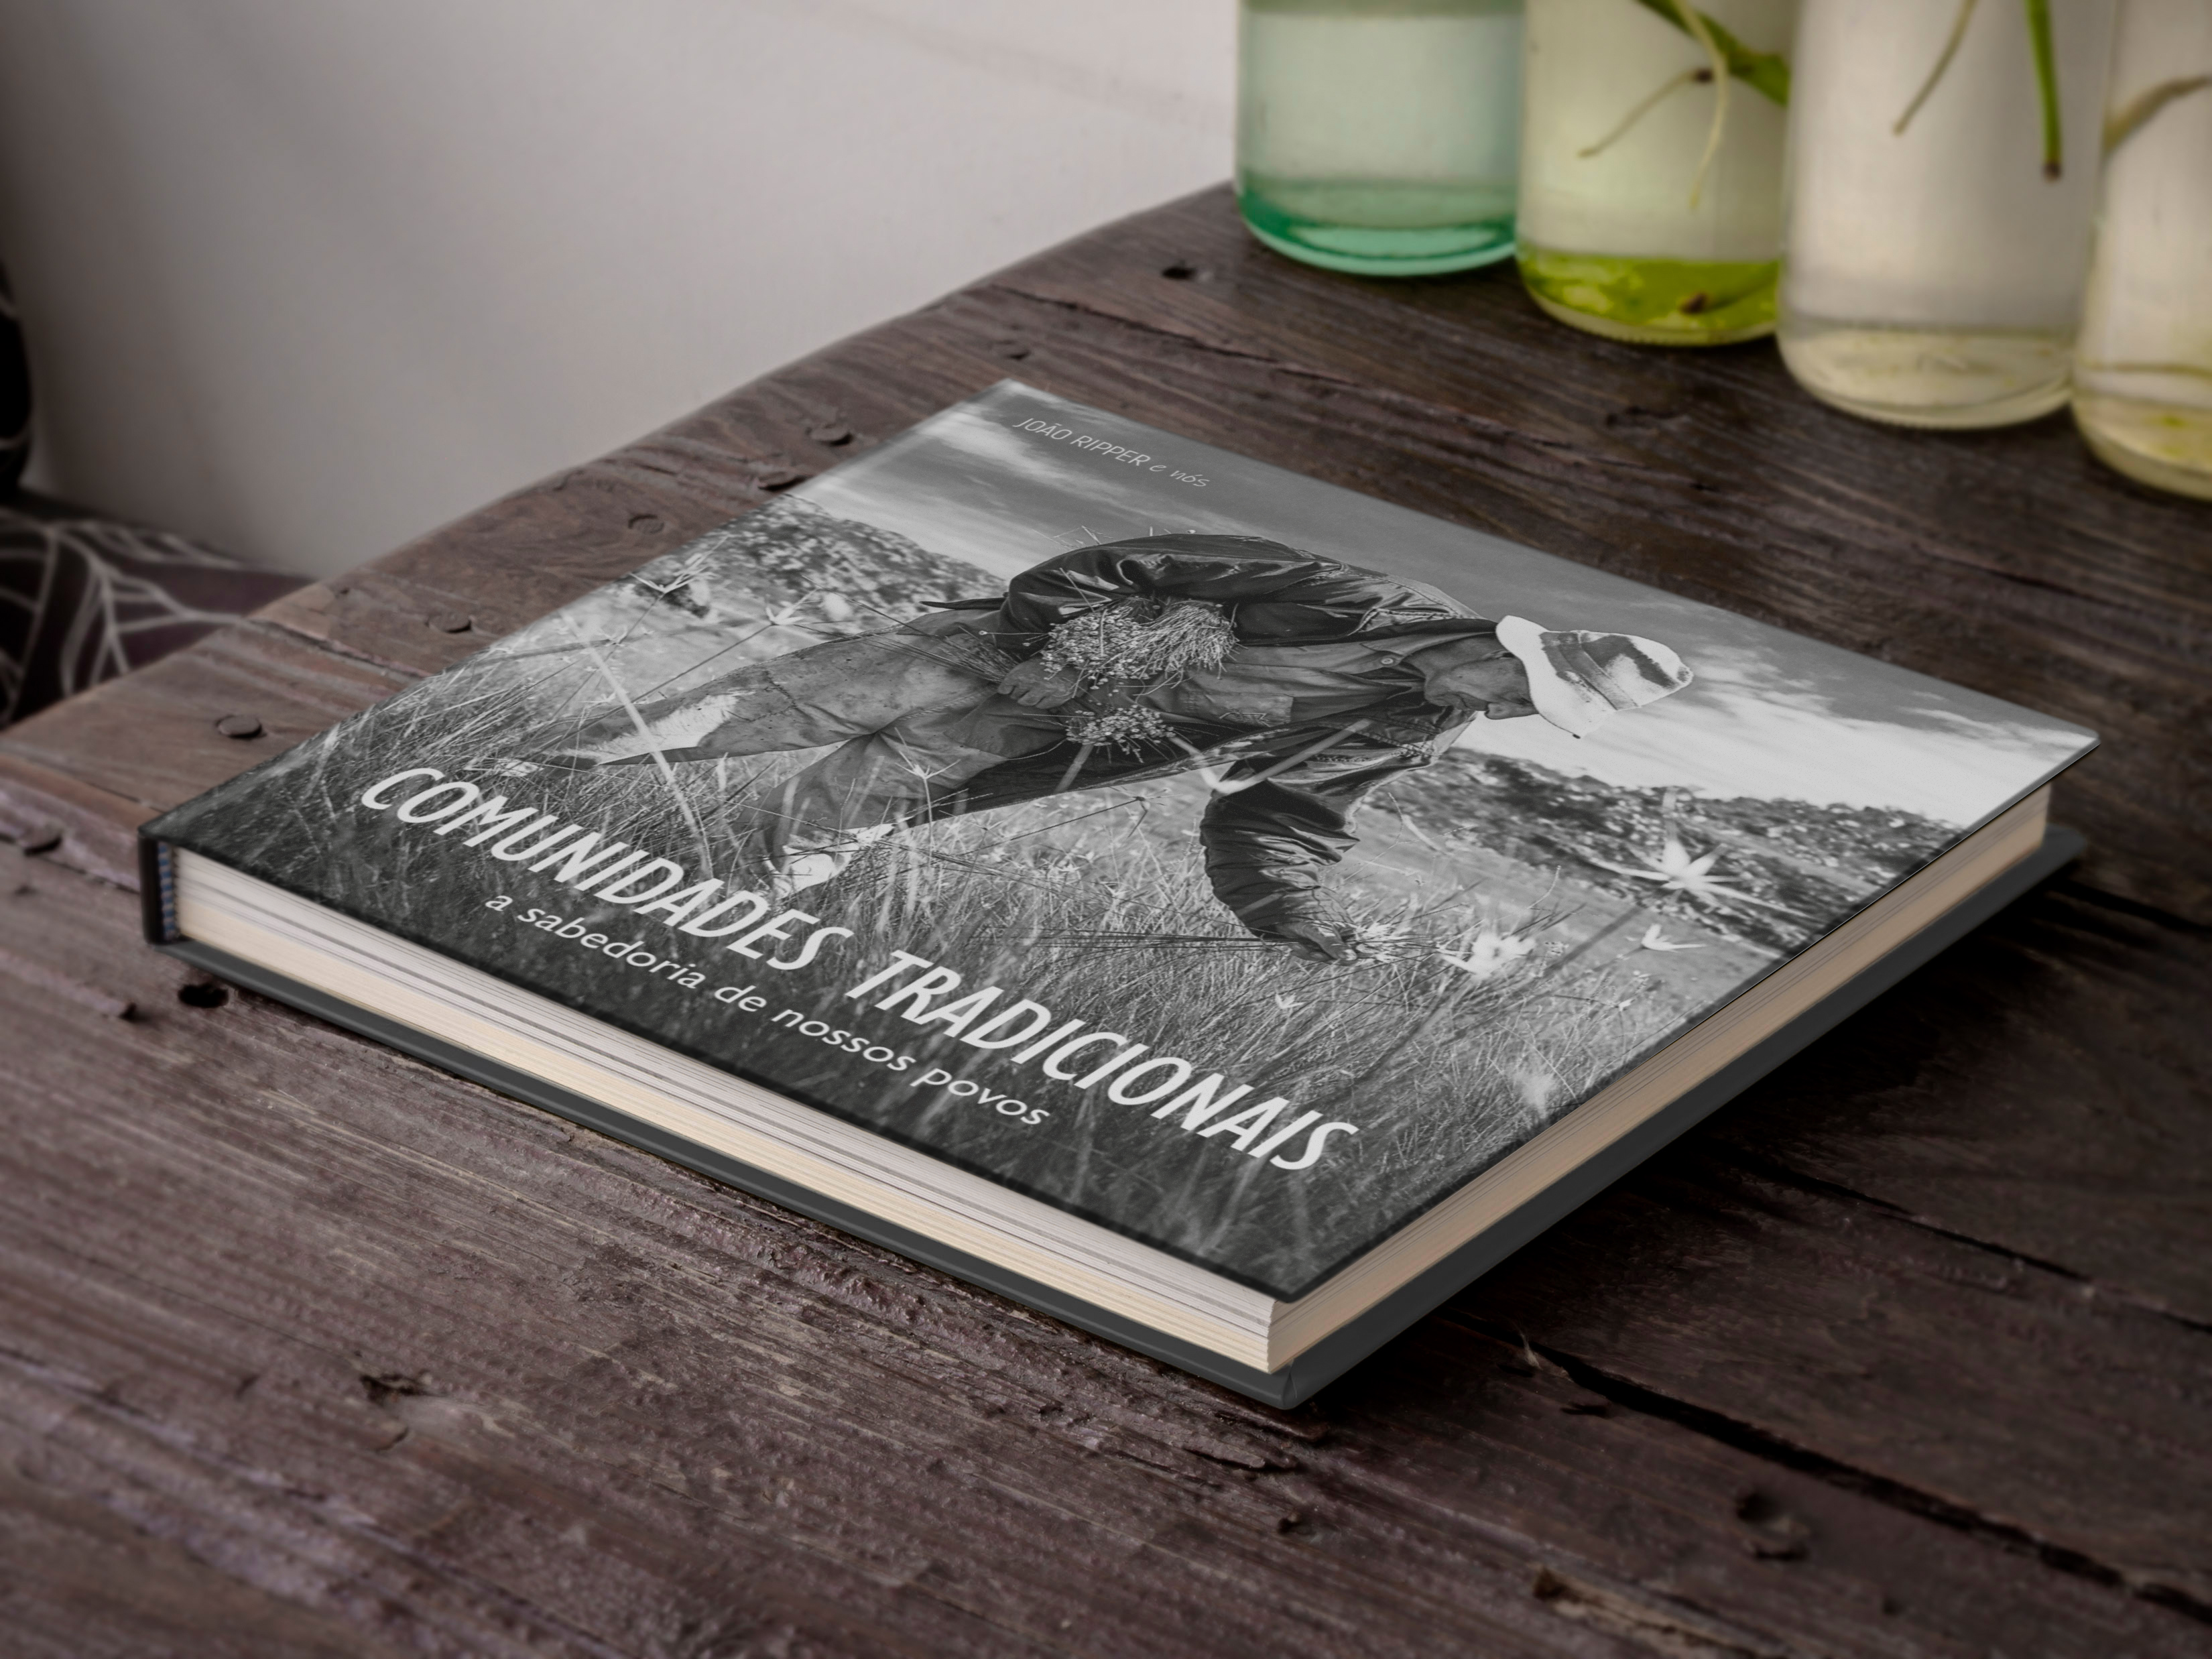 Exposição fotográfica “Imagens Humanas” de João Ripper e lançamento do seu livro “Comunidades Tradicionais”